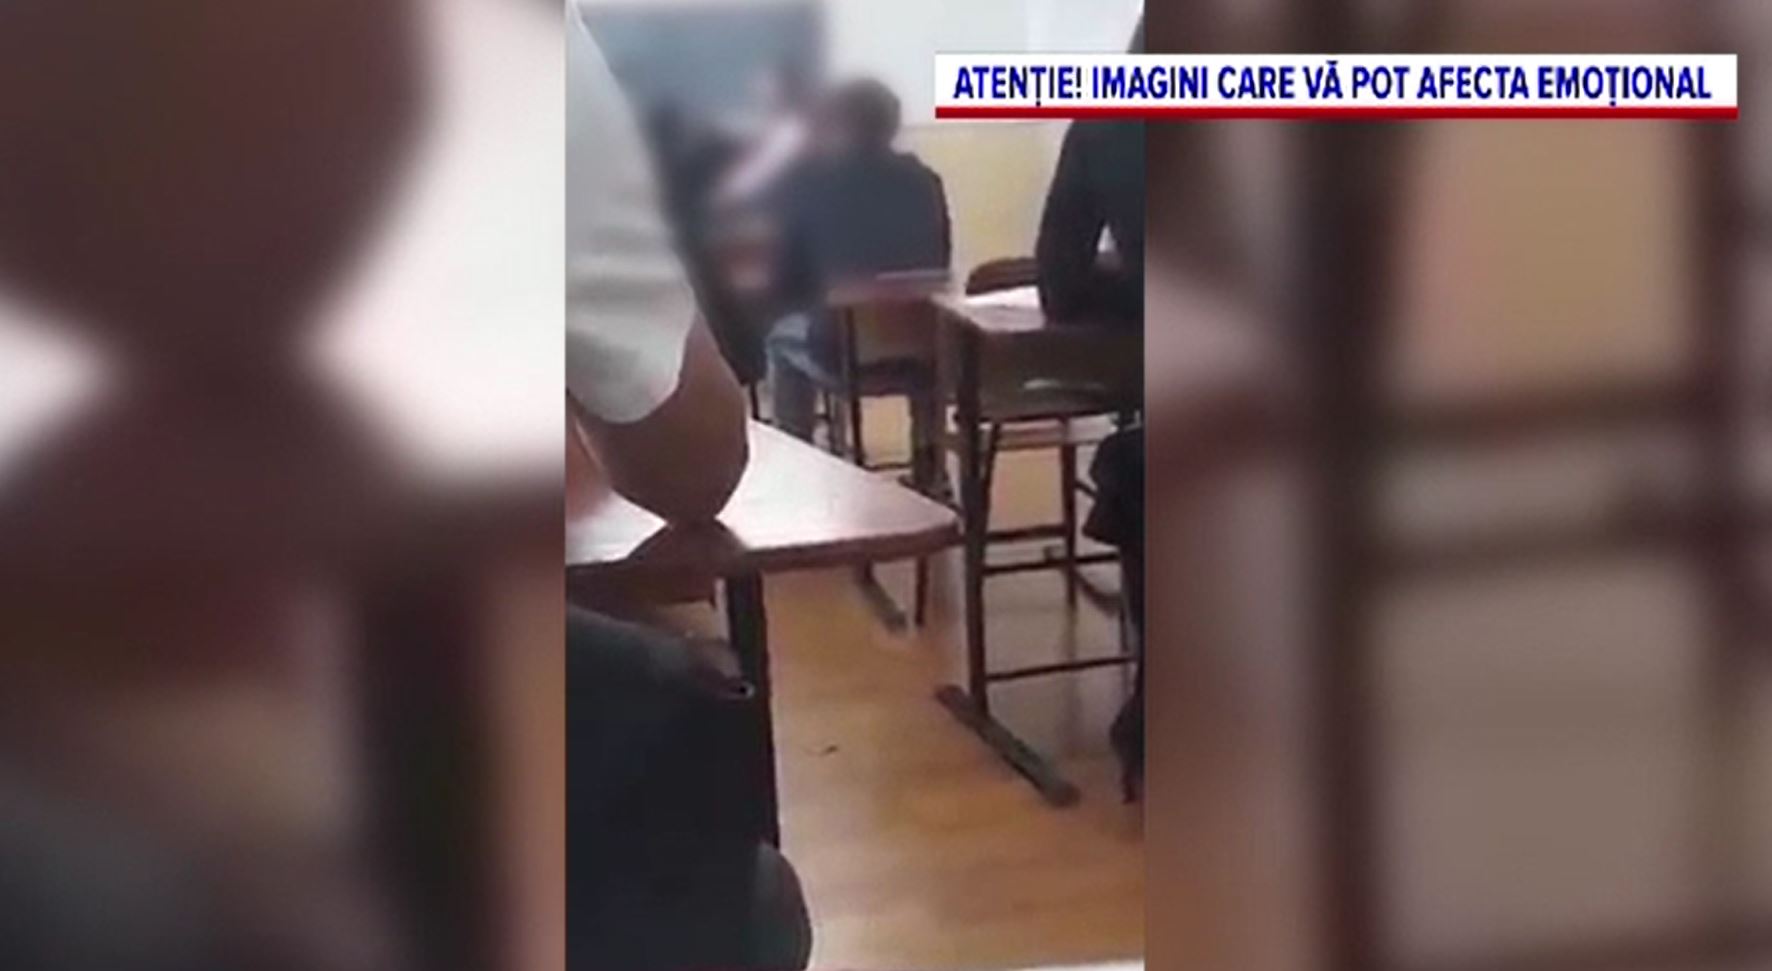 Episod șocant într-un liceu din Călărași. O profesoară a fost filmată în timp ce lovea un elev